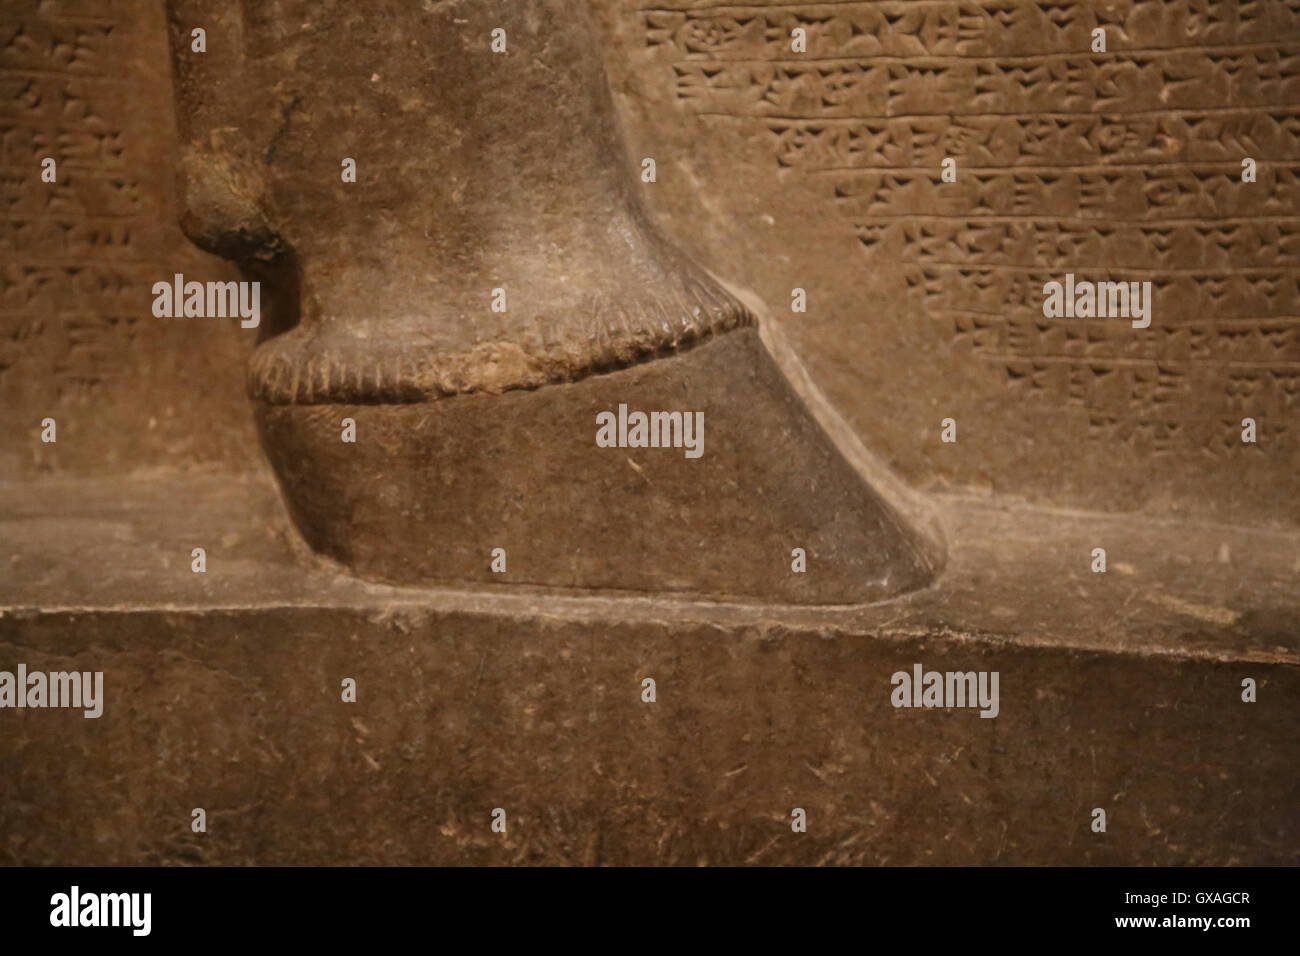 Uomo con testa di leone alato (lamassu). Zoccolo. 883-859 A.C. Neo-Assyrian. Regno di Ashurnasirpal. Nimrud (antica Kalhu). Mes settentrionale Foto Stock